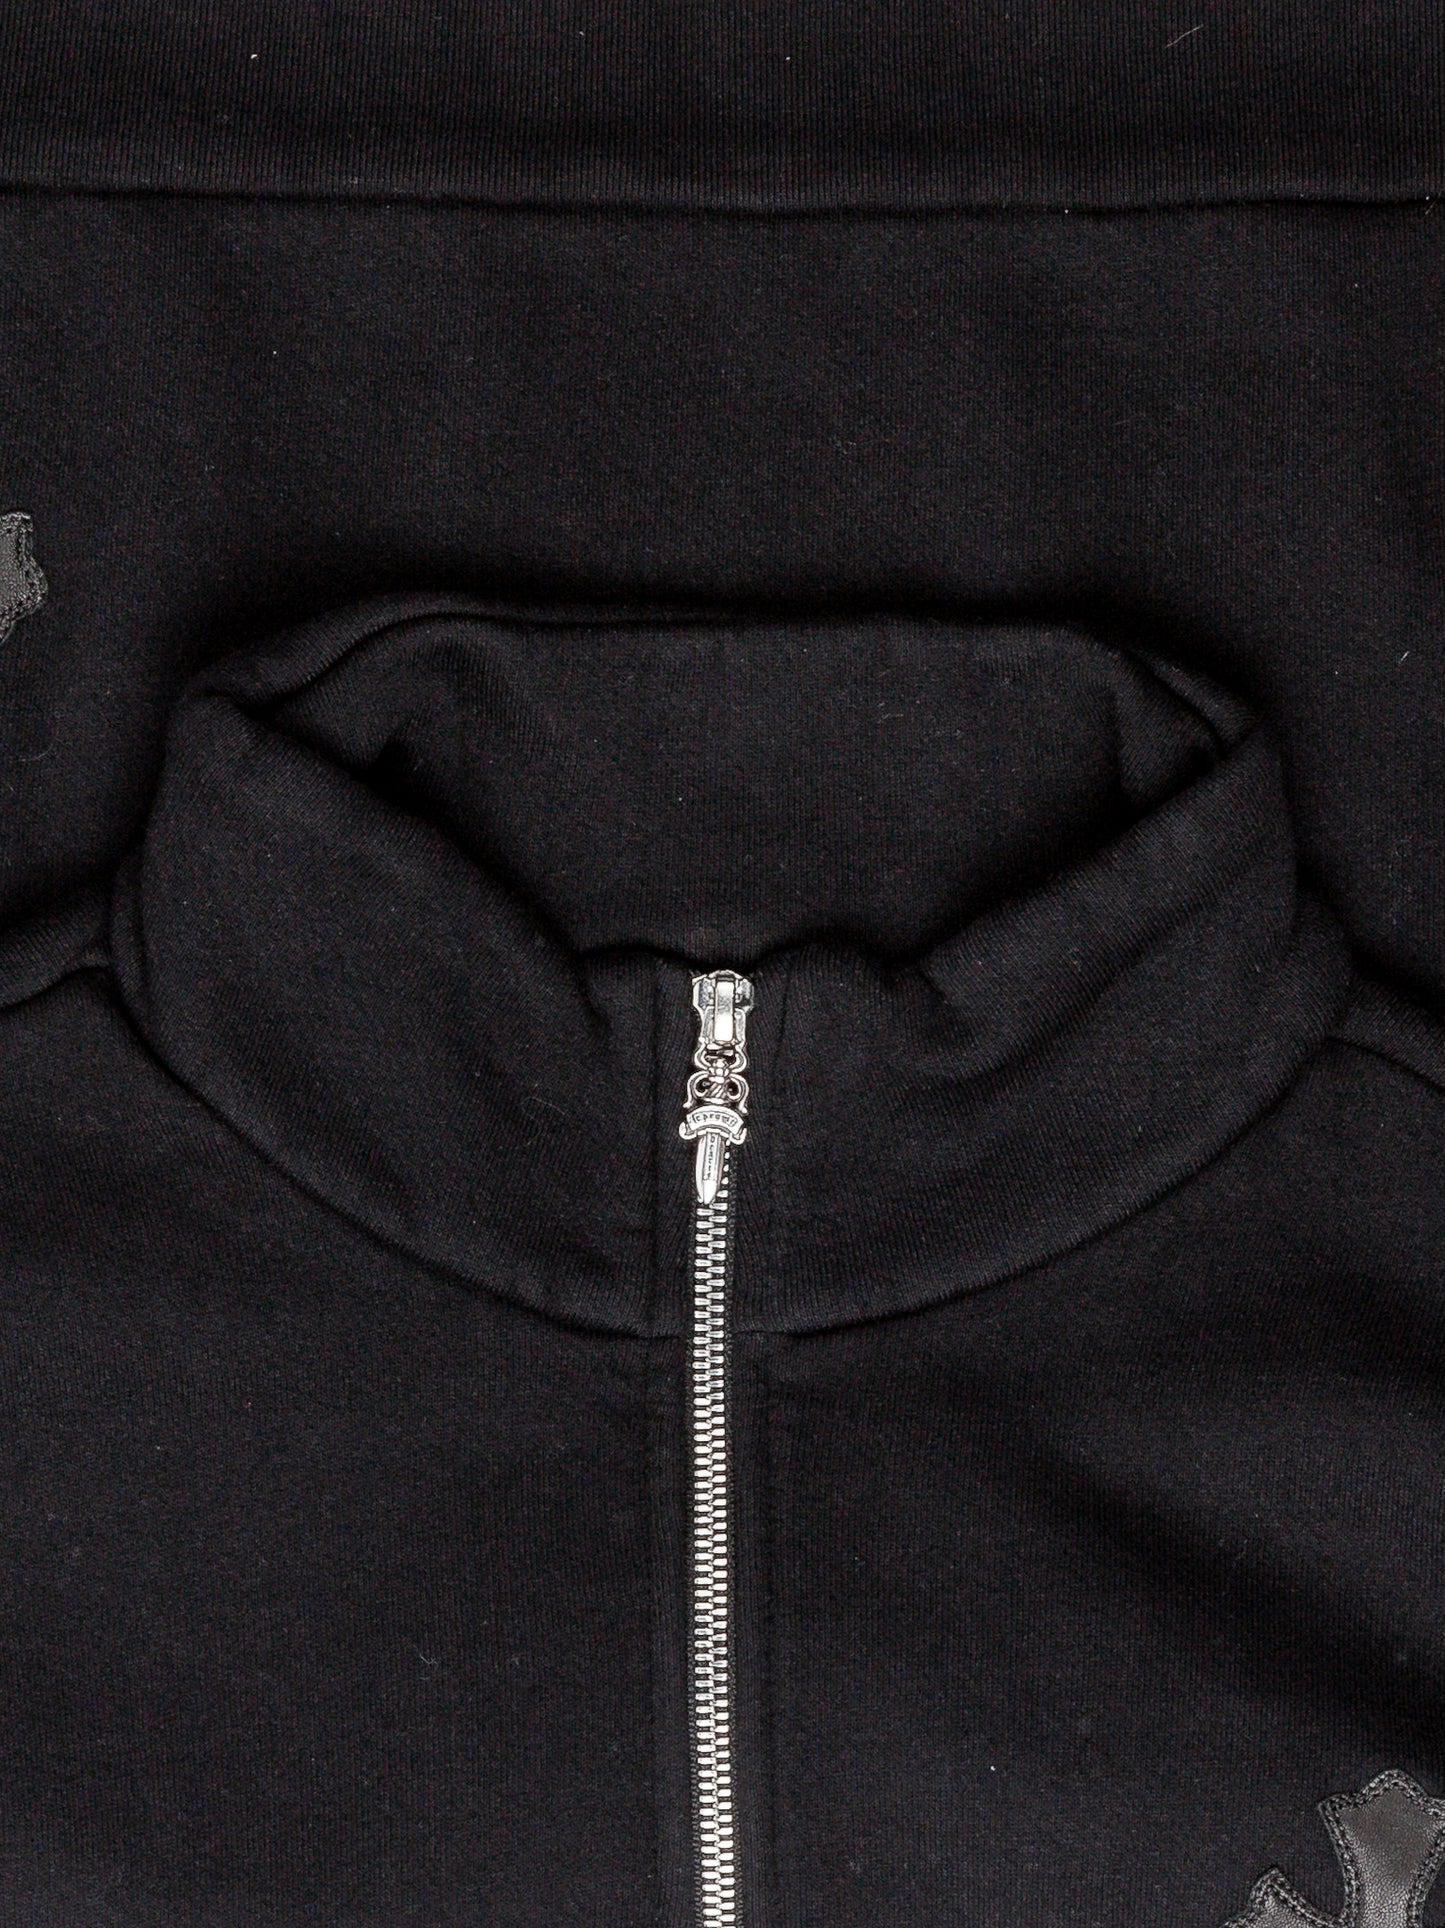 1/4 Zip Patched Sweatshirt